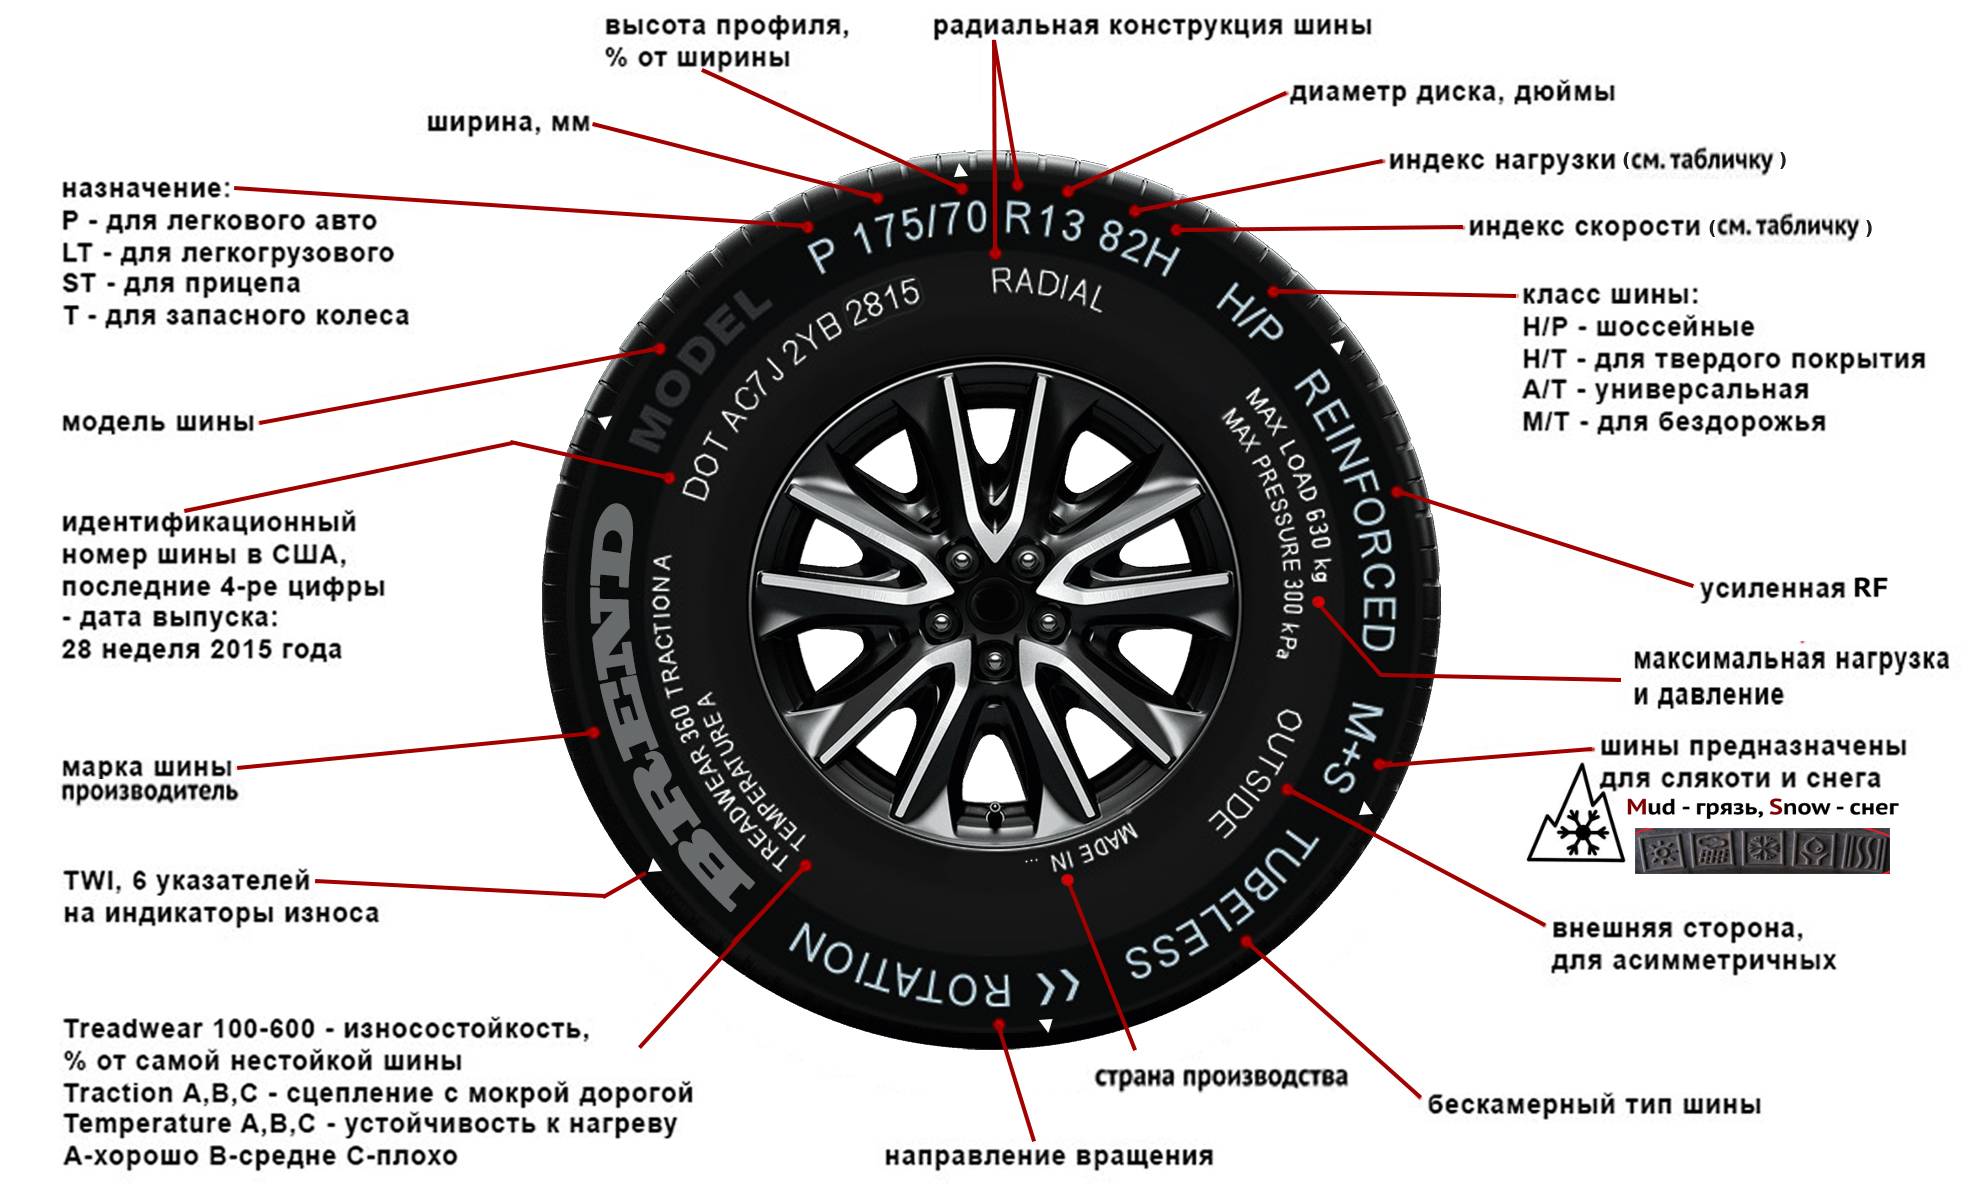 Маркировка шин и расшифровка их обозначений: таблицы для легковых автомобилей и кроссоверов